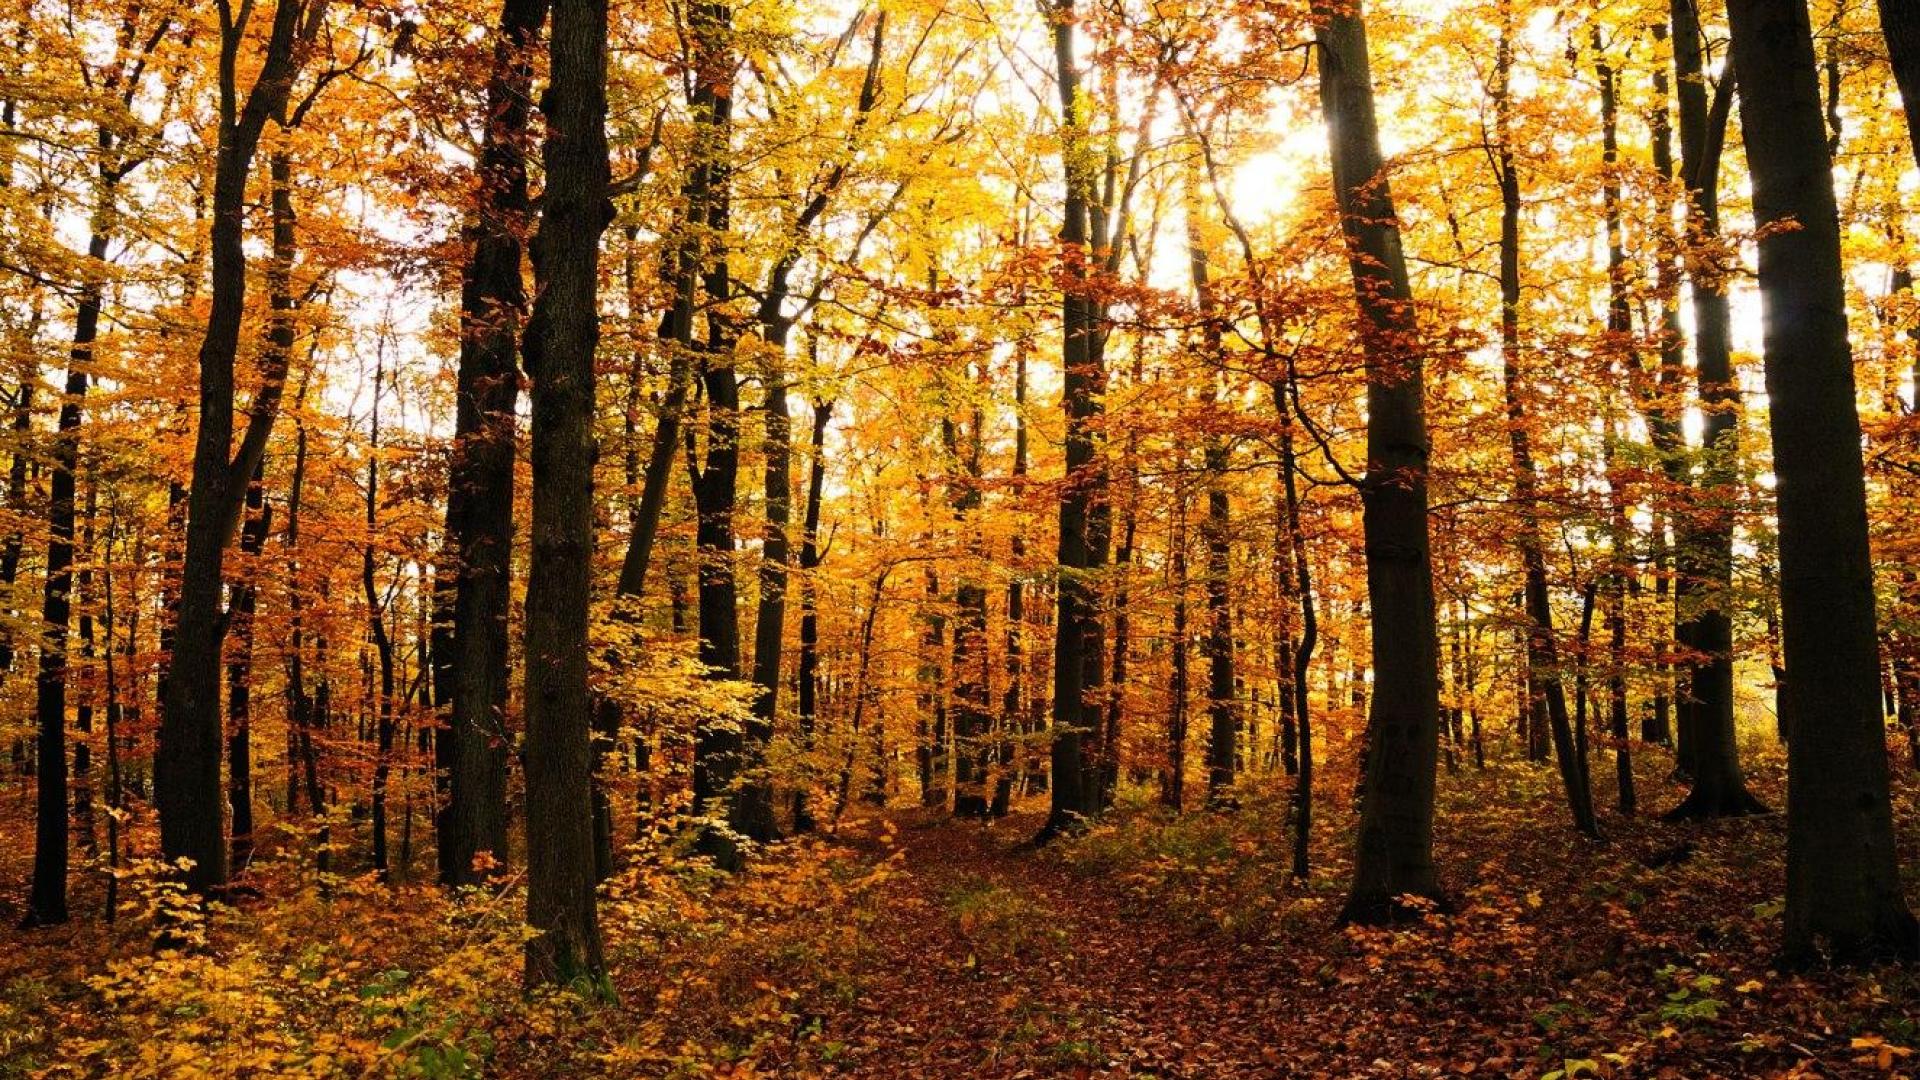 autumn in the woods wallpaper - (#88495) - HQ Desktop Wallpapers ...